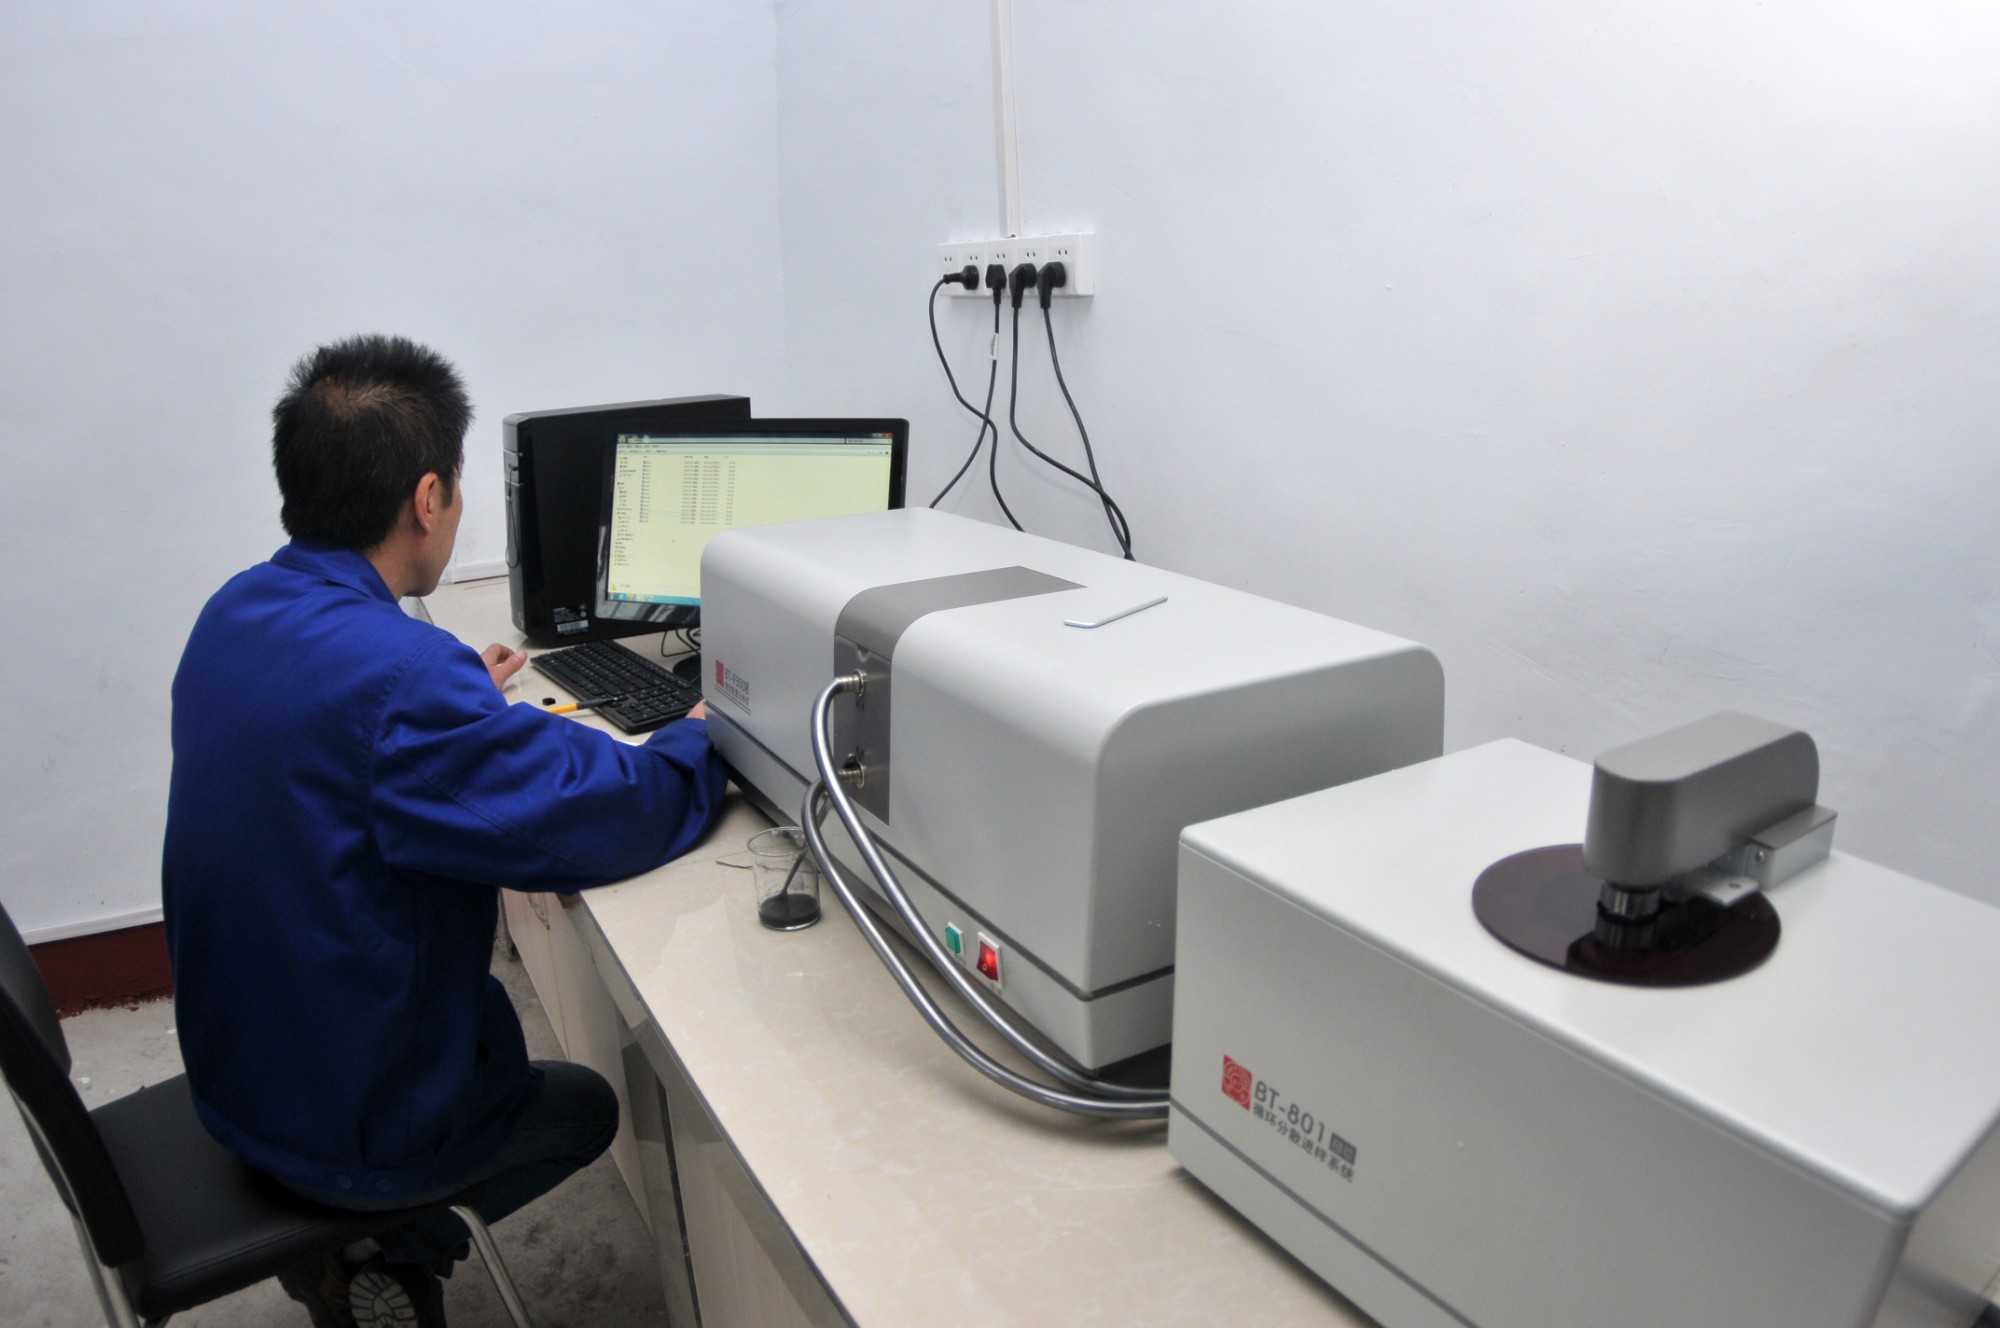 Shenyu Product Testing Center